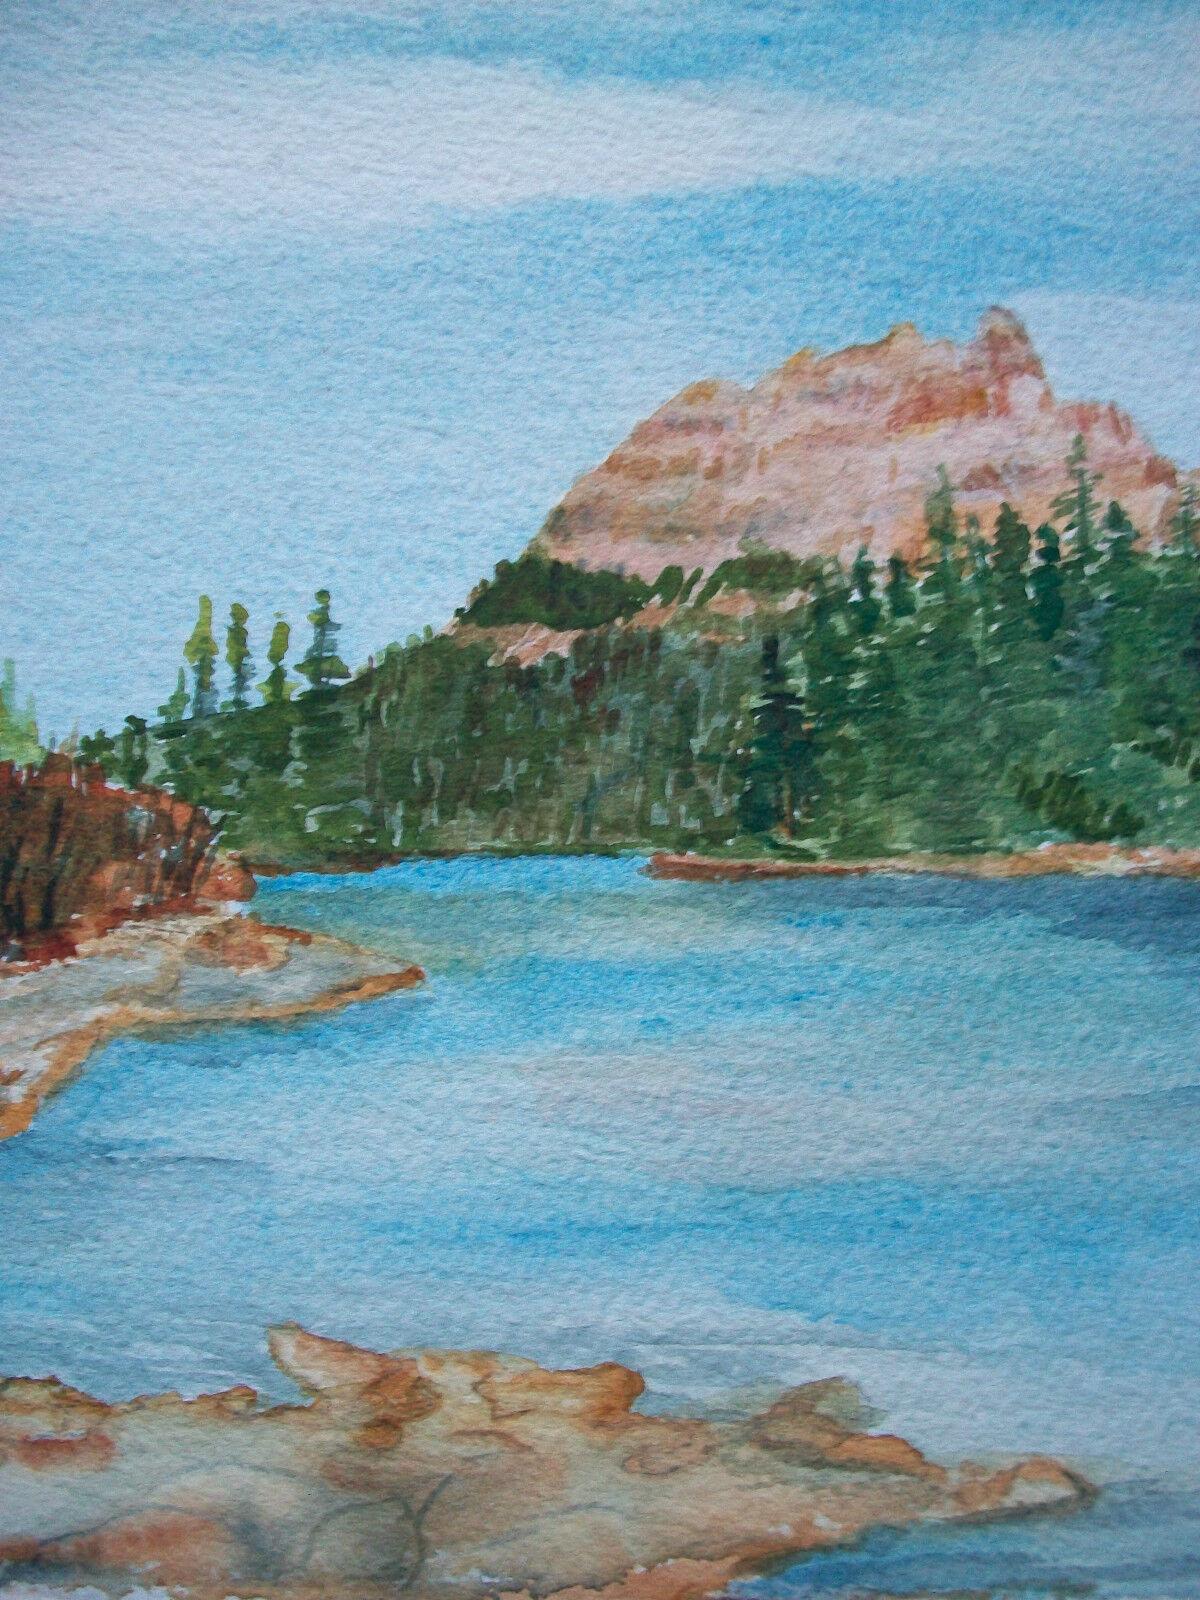 VELLA STRAND - 'Castle Mountain and Bow River - Alberta' - Zeitgenössisches Aquarell auf Aquarellpapier - signiert unten rechts - ungerahmt - Kanada - um 2000.

Hervorragender Zustand - kein Verlust - keine Beschädigung - keine Restaurierung -